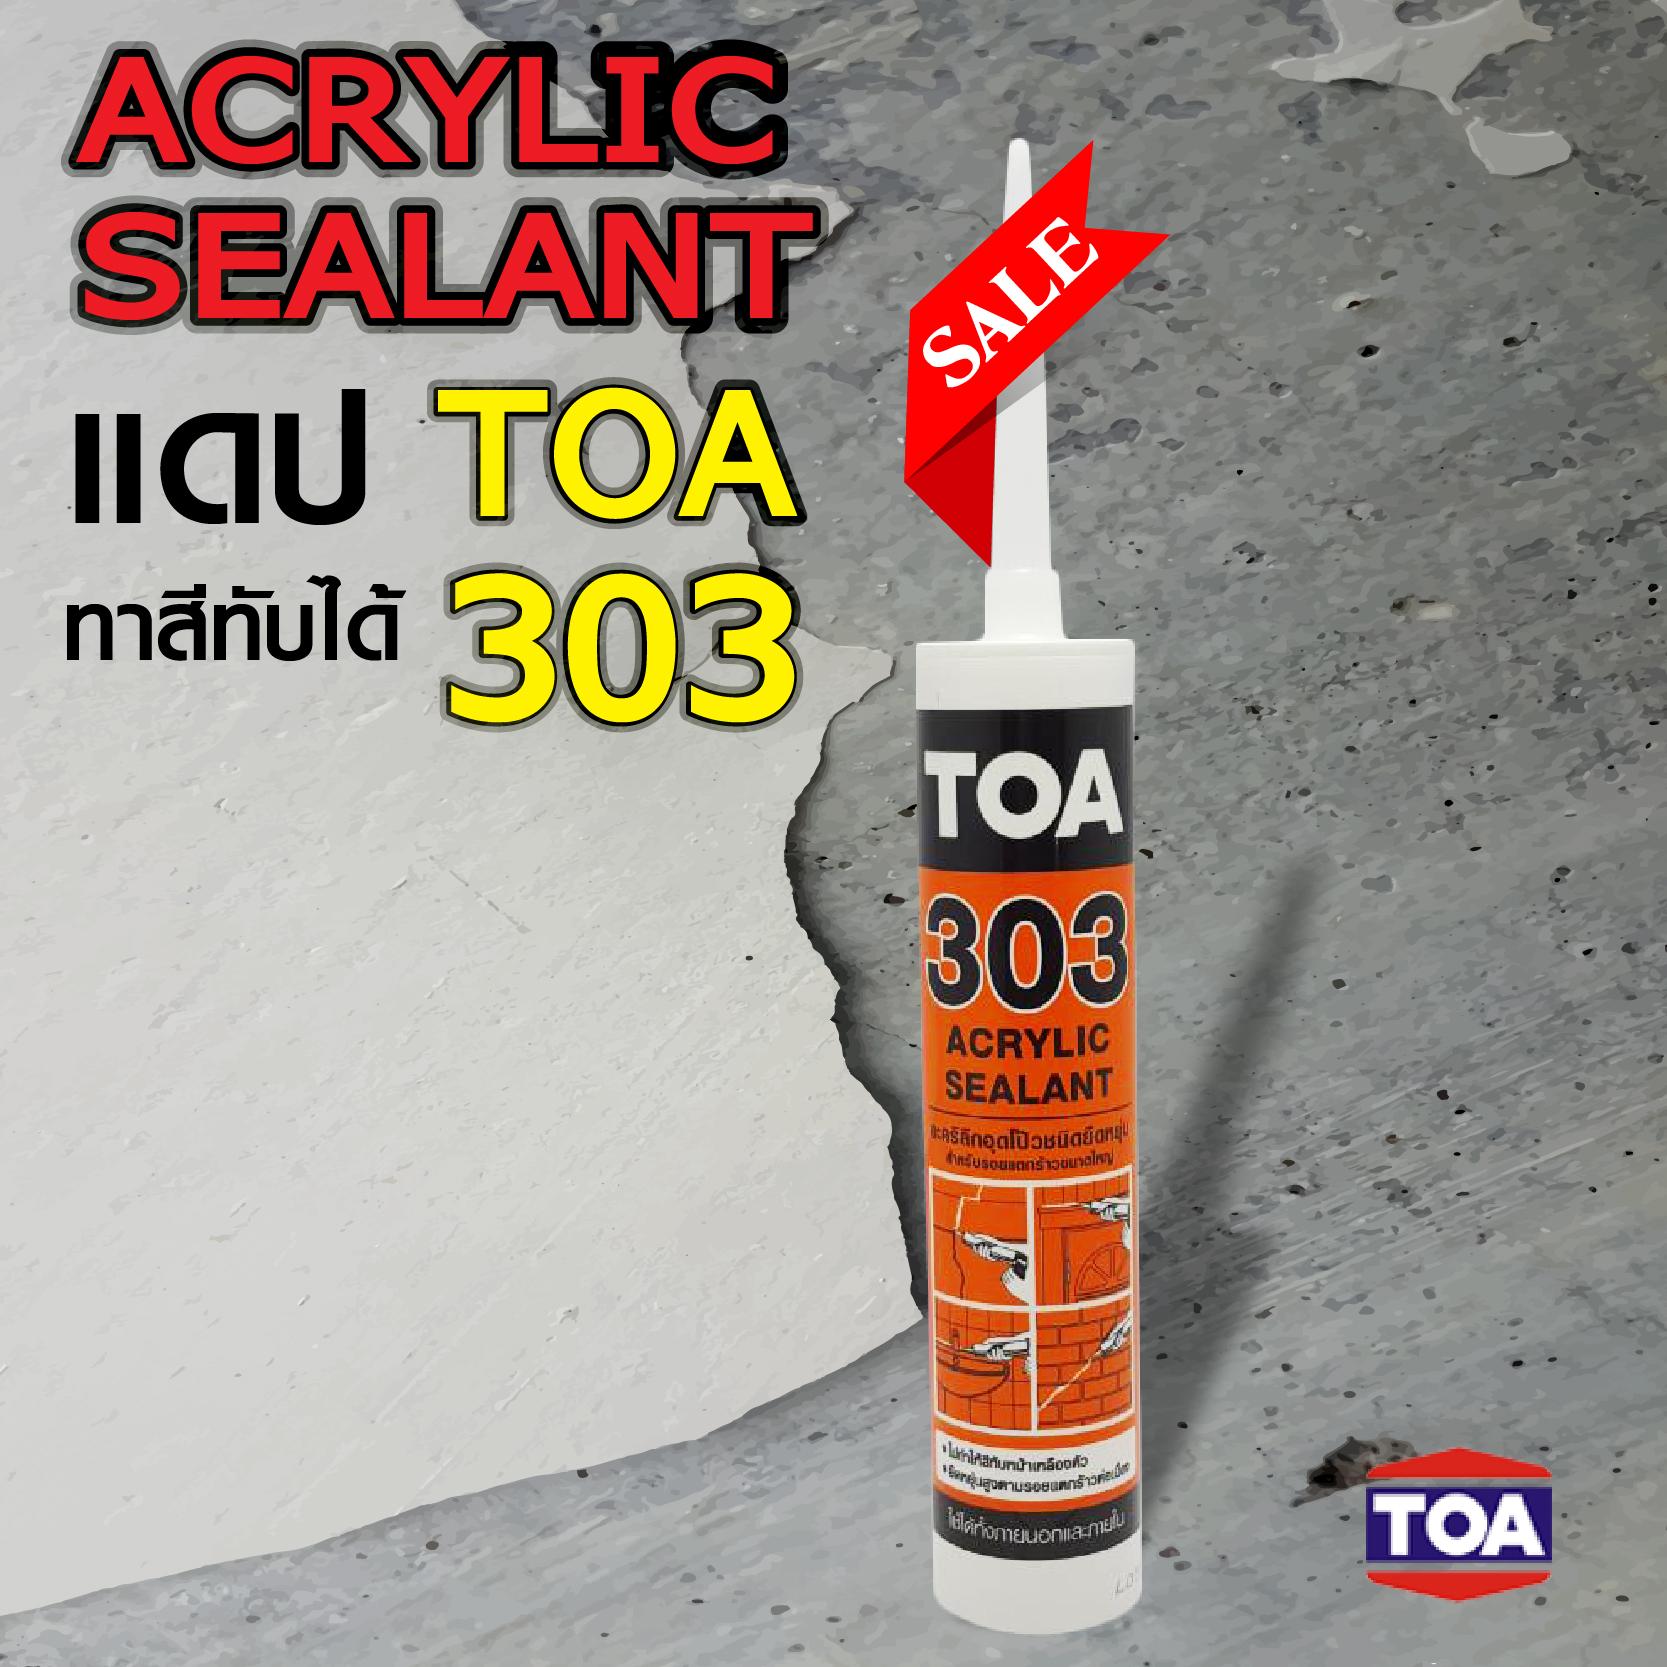 ทีโอเอ 303 อะคริลิก ซีลแลนท์ TOA 303 Acrylic Sealant